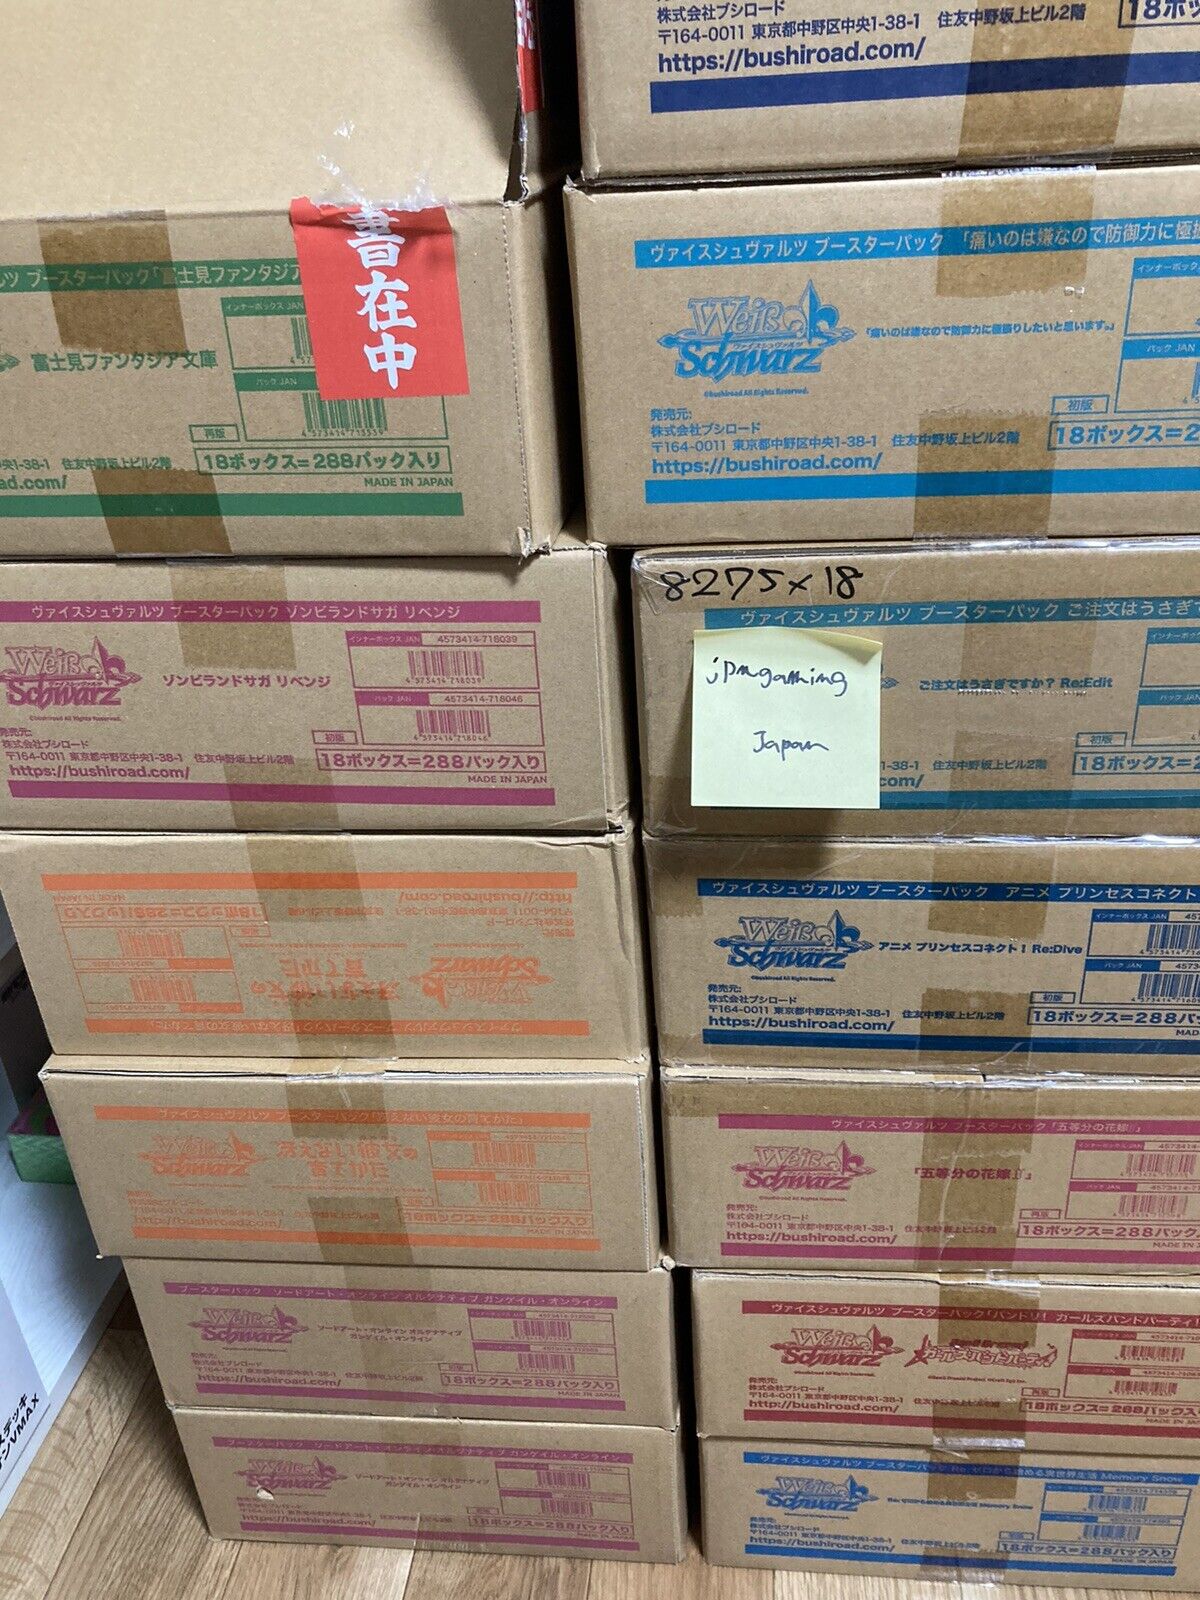 【SALE】Case (30 Boxes) Weiss Schwarz Japanese Marvel Premium Booster Box FedEx IP